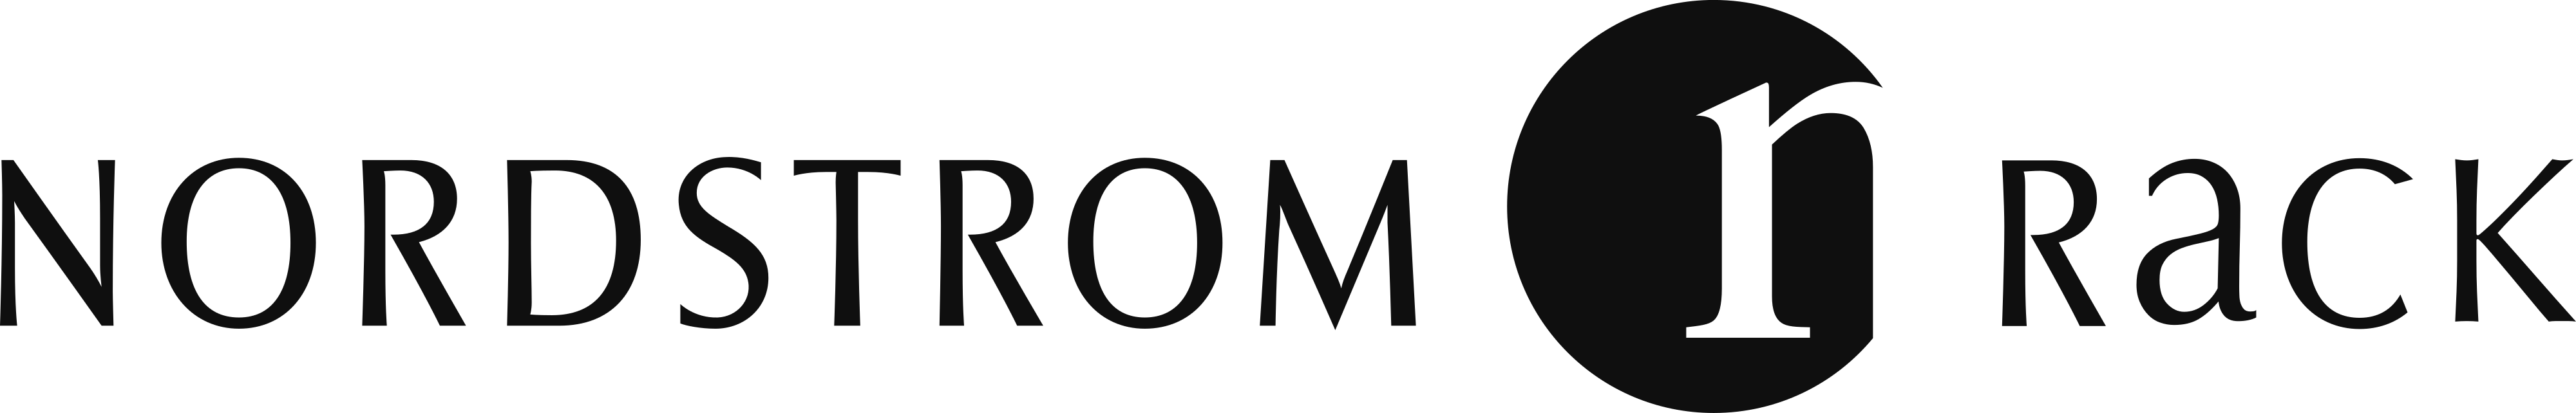 Nordstrom Rack logo - download.